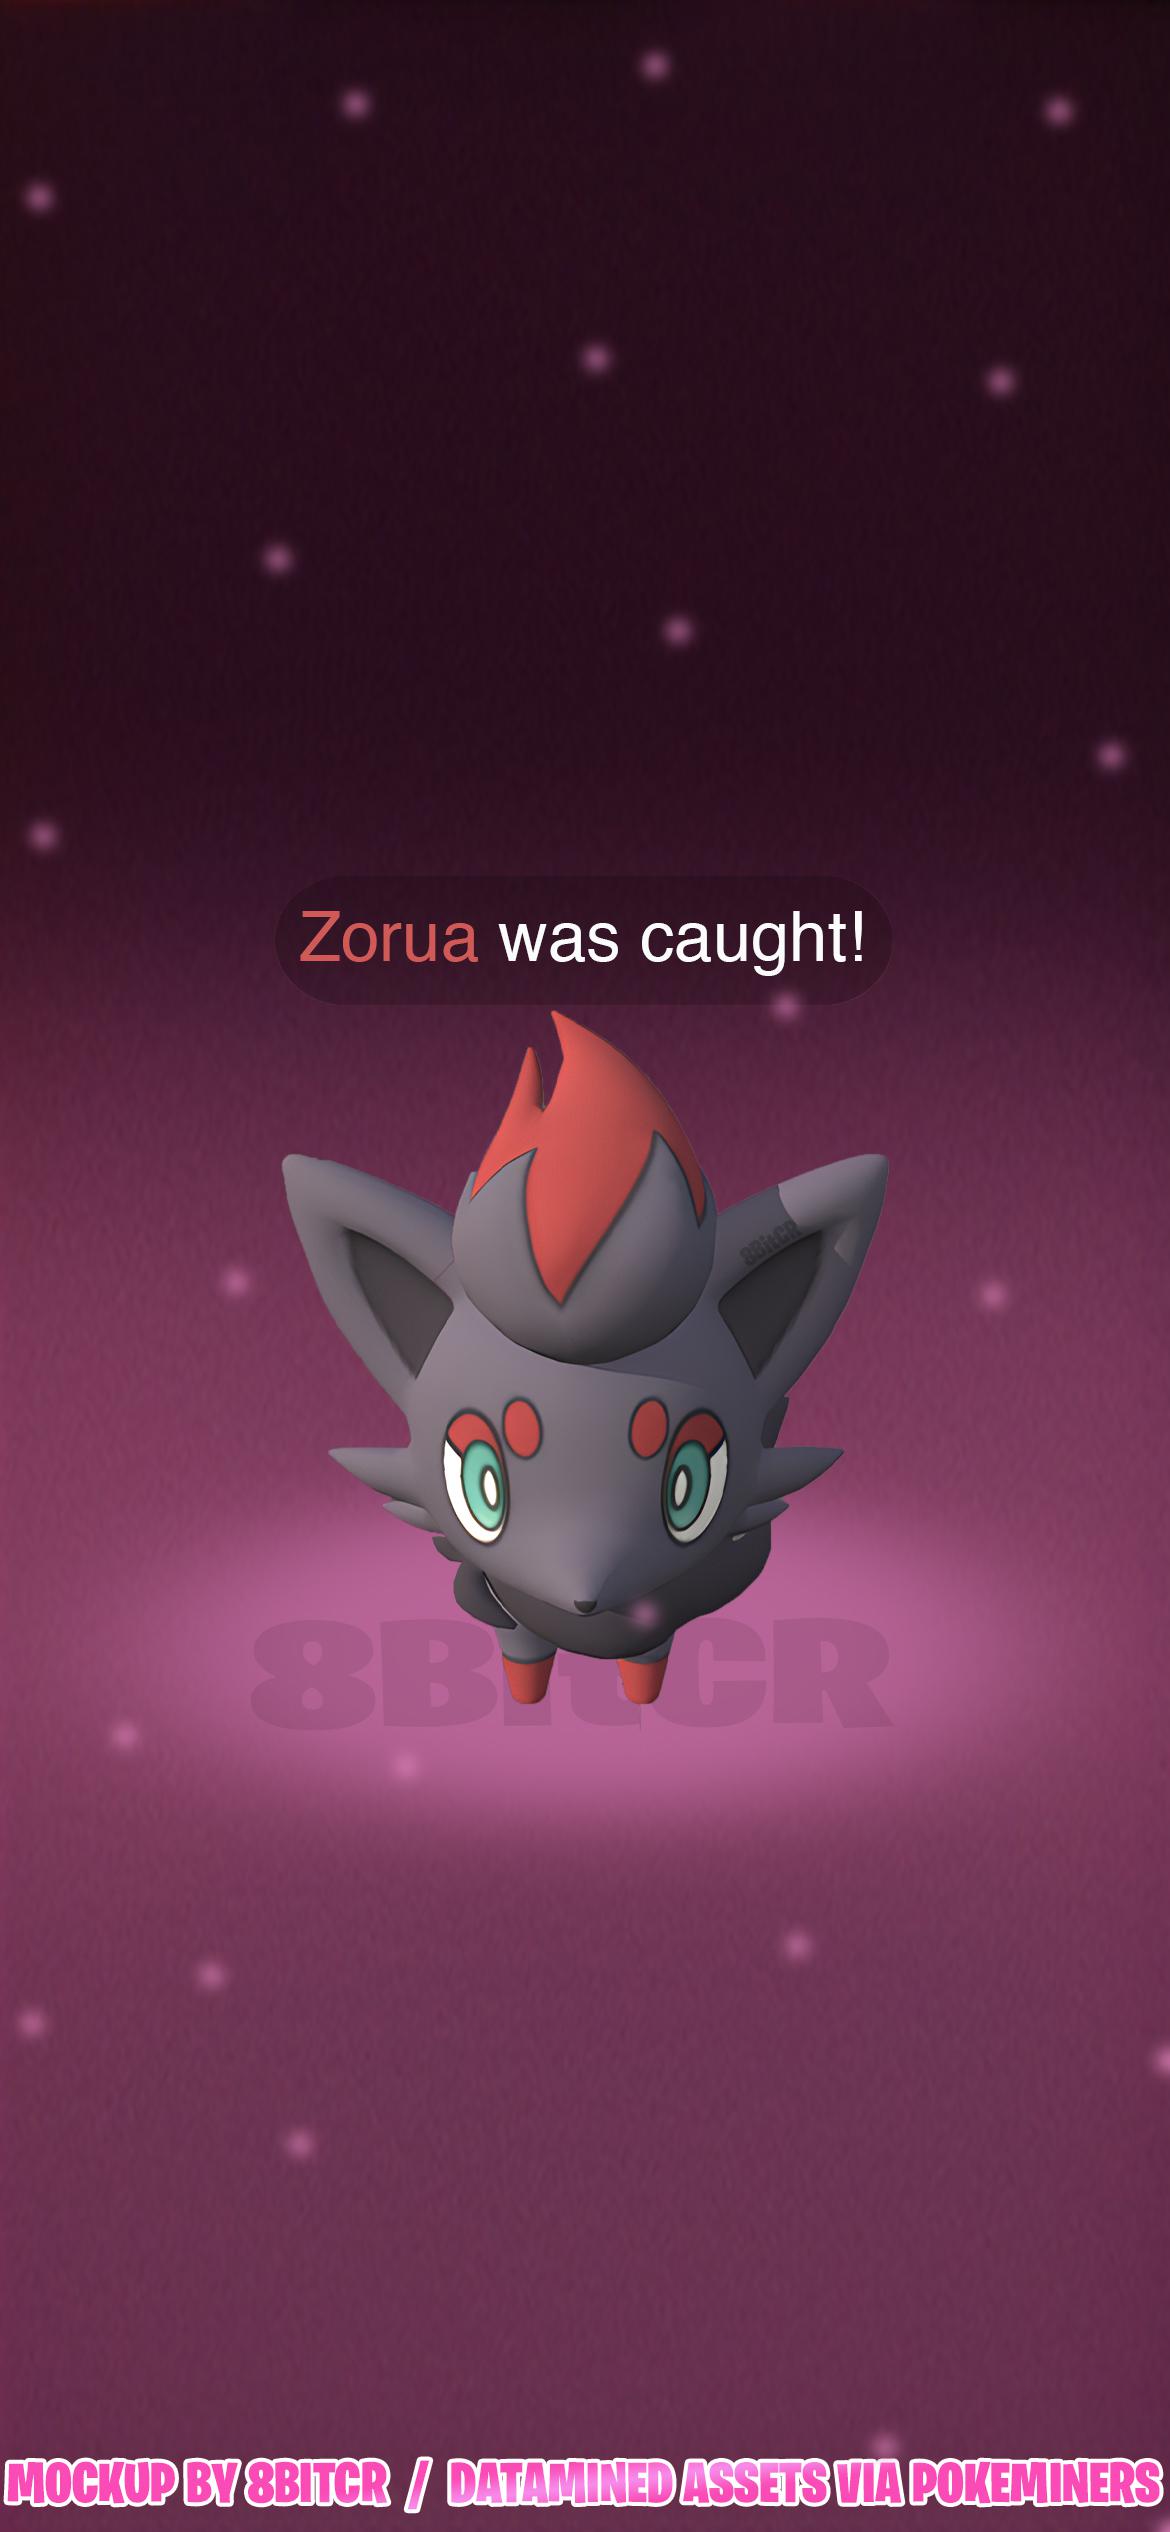 Zorua in Pokémon GO